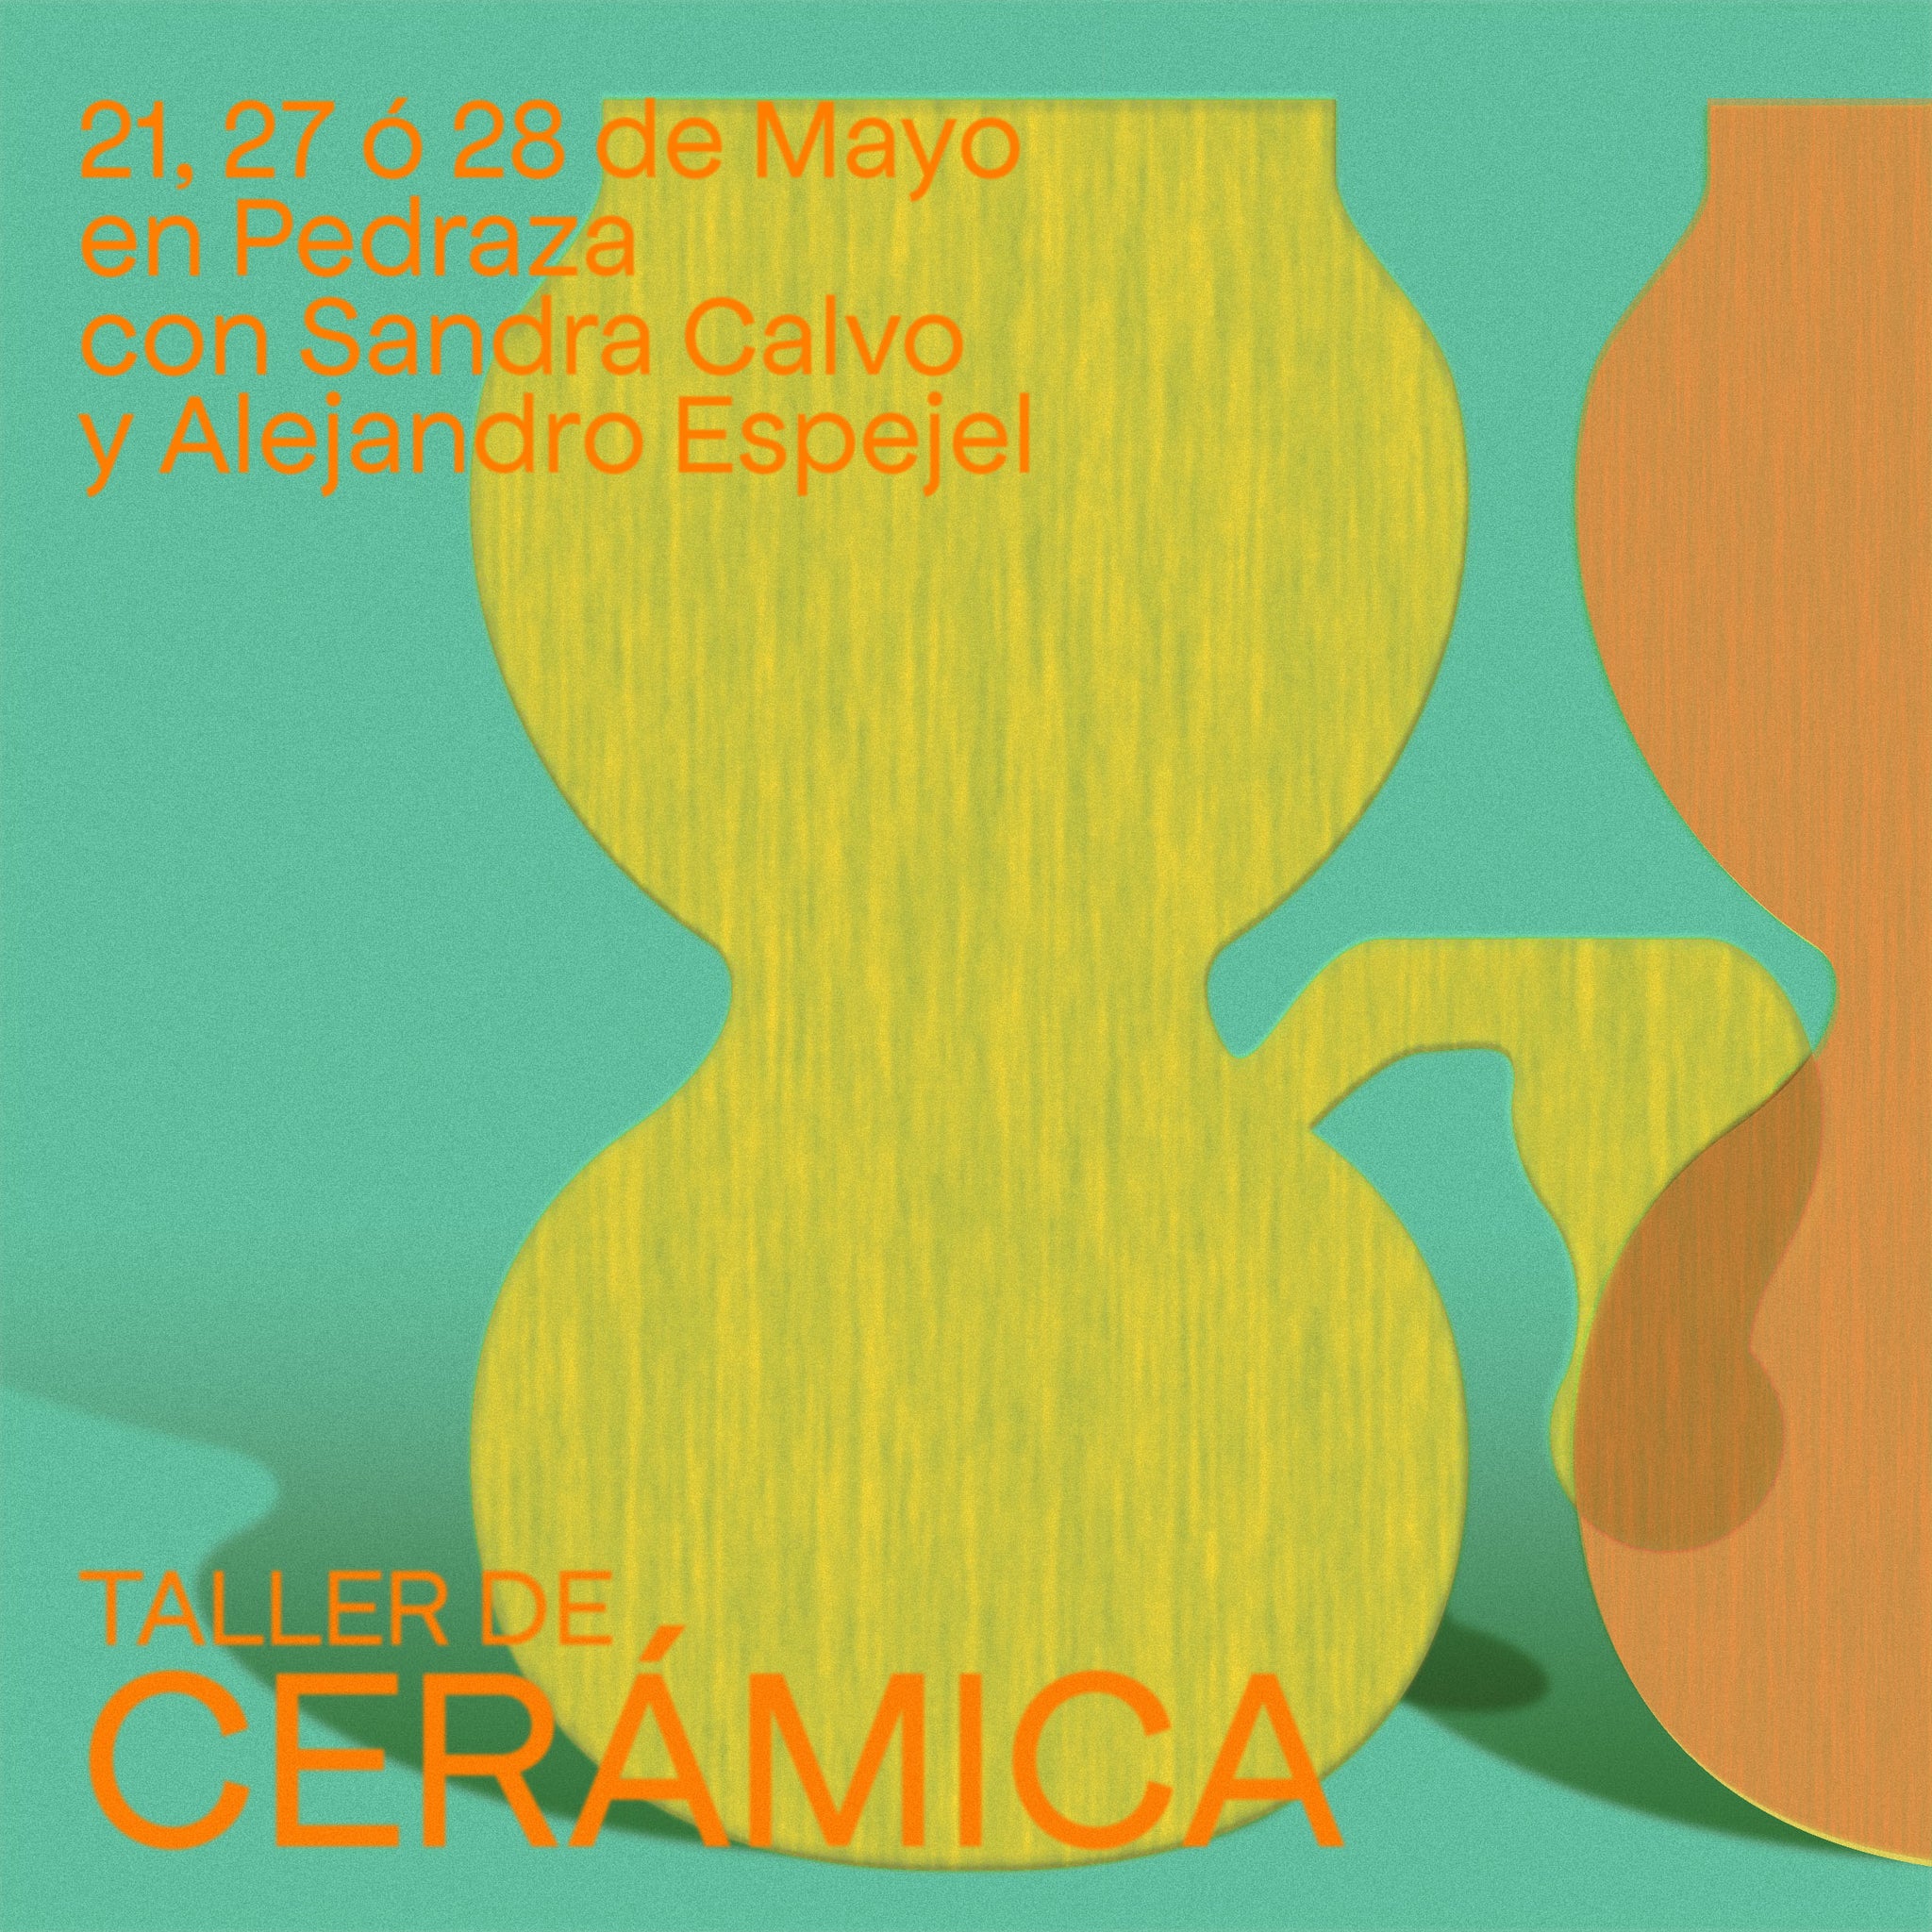 MAYO 2023 - Taller de cerámica con Alejandro F. Espejel y Sandra Calvo<br>Sábado 21 de mayo<br>Sábado 27 de Mayo<br>Domingo 28 de Mayo